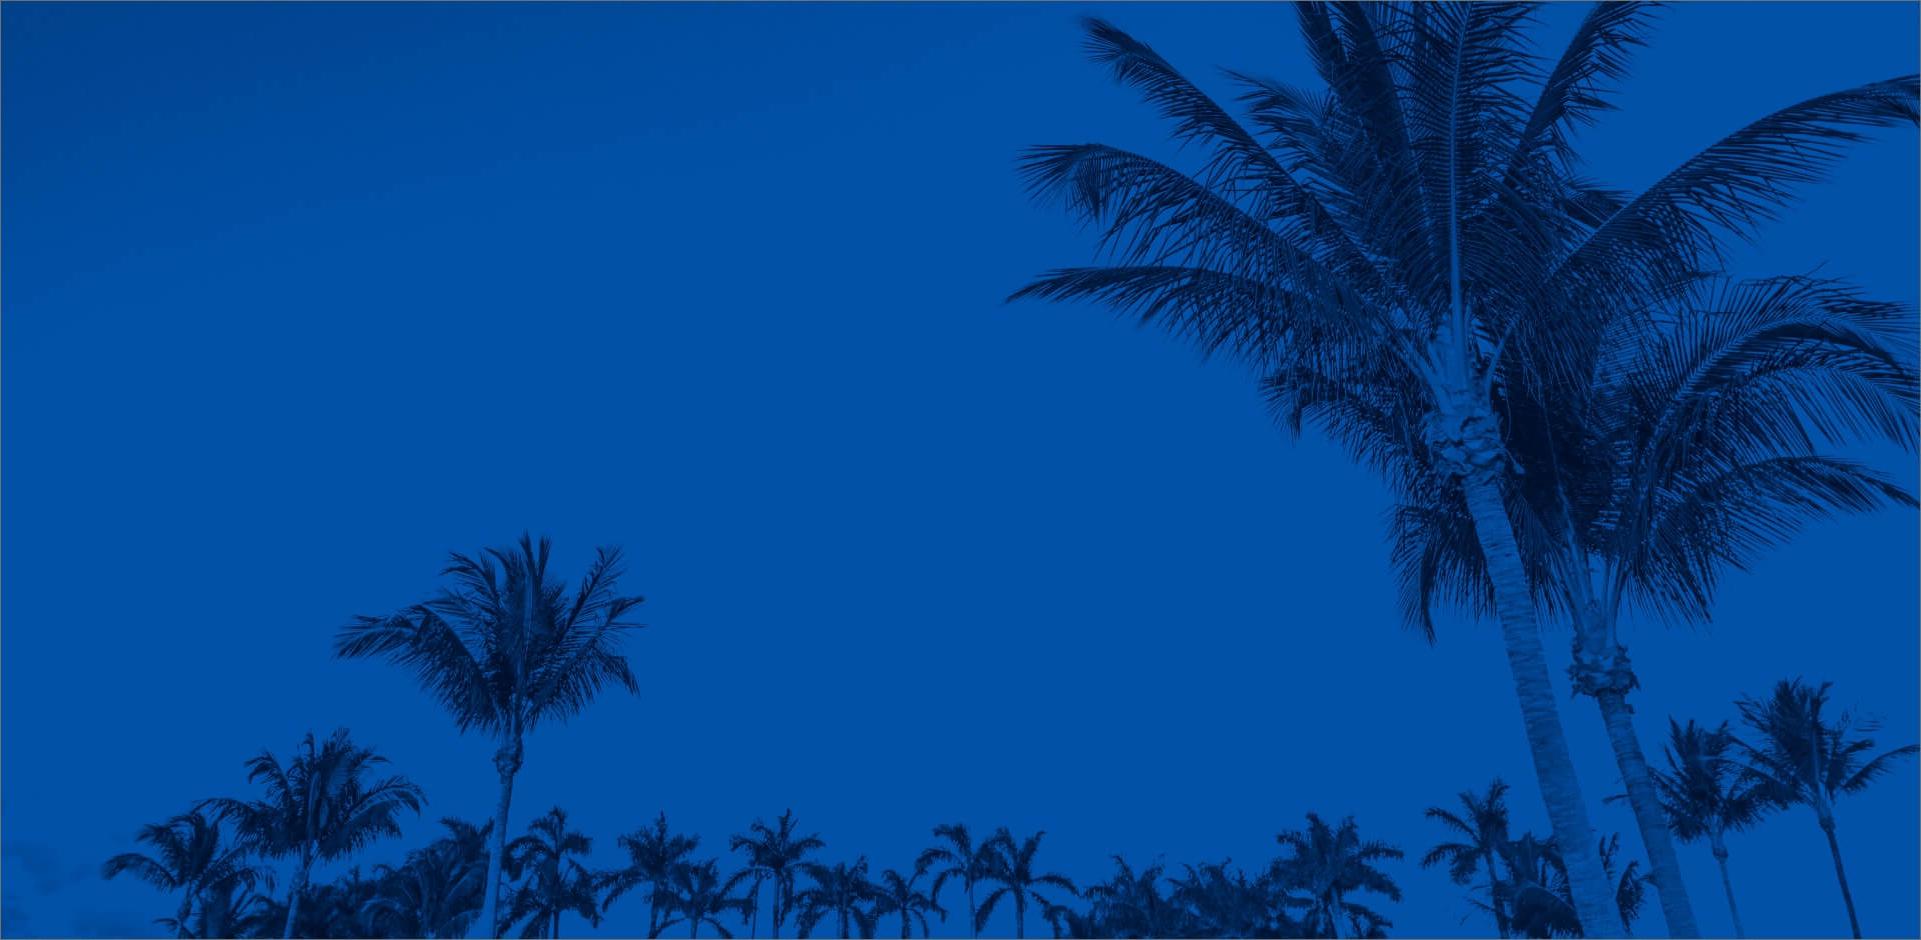 棕榈树下的天空覆盖着蓝色的色调